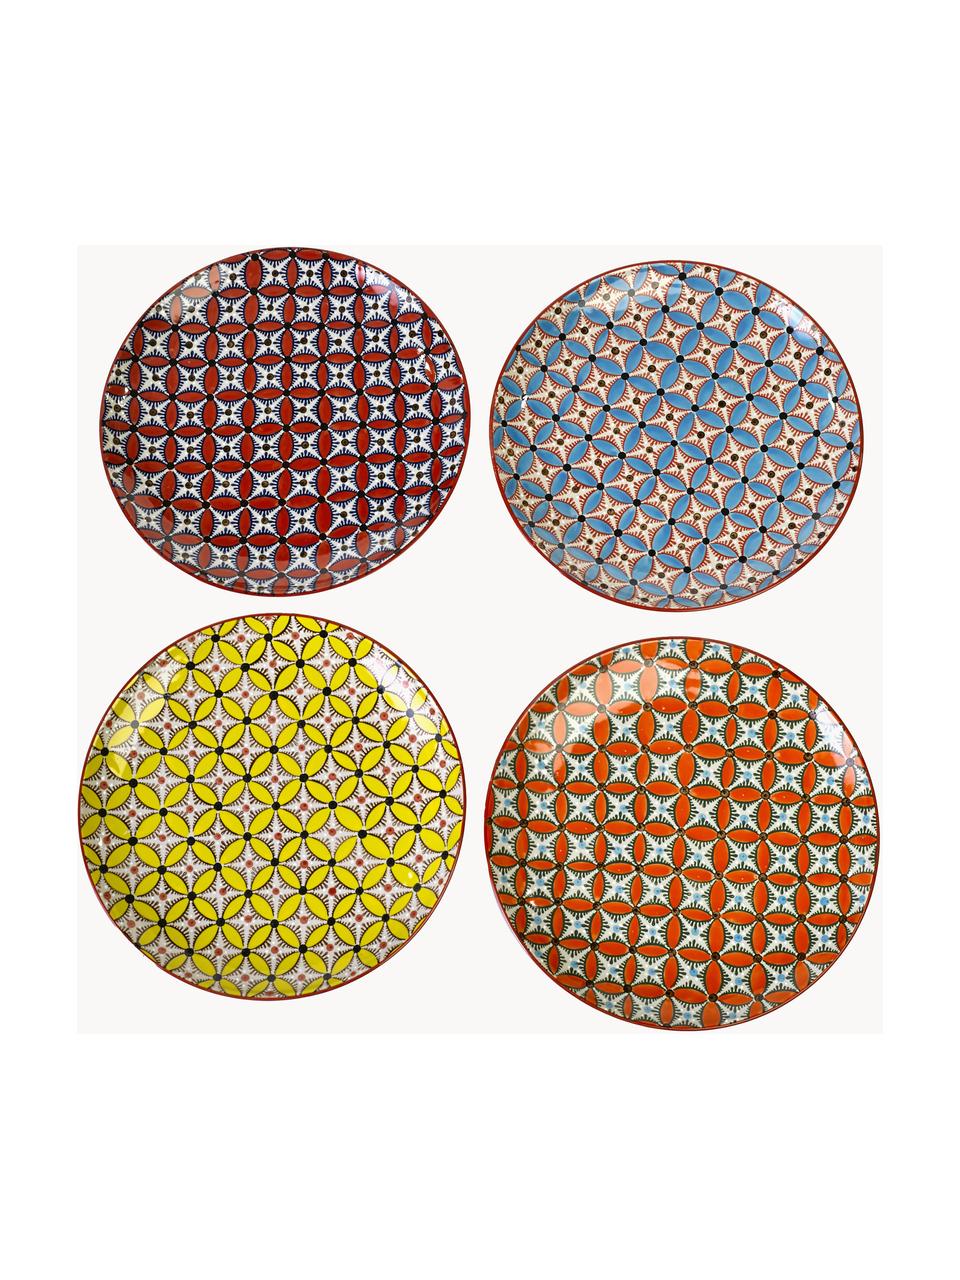 Súprava ručne maľovaných plytkých tanierov Hippy, 4 diely, Keramika, glazúrovaná, Žltá, terakotová, oranžová, svetlomodrá, Ø 27 cm